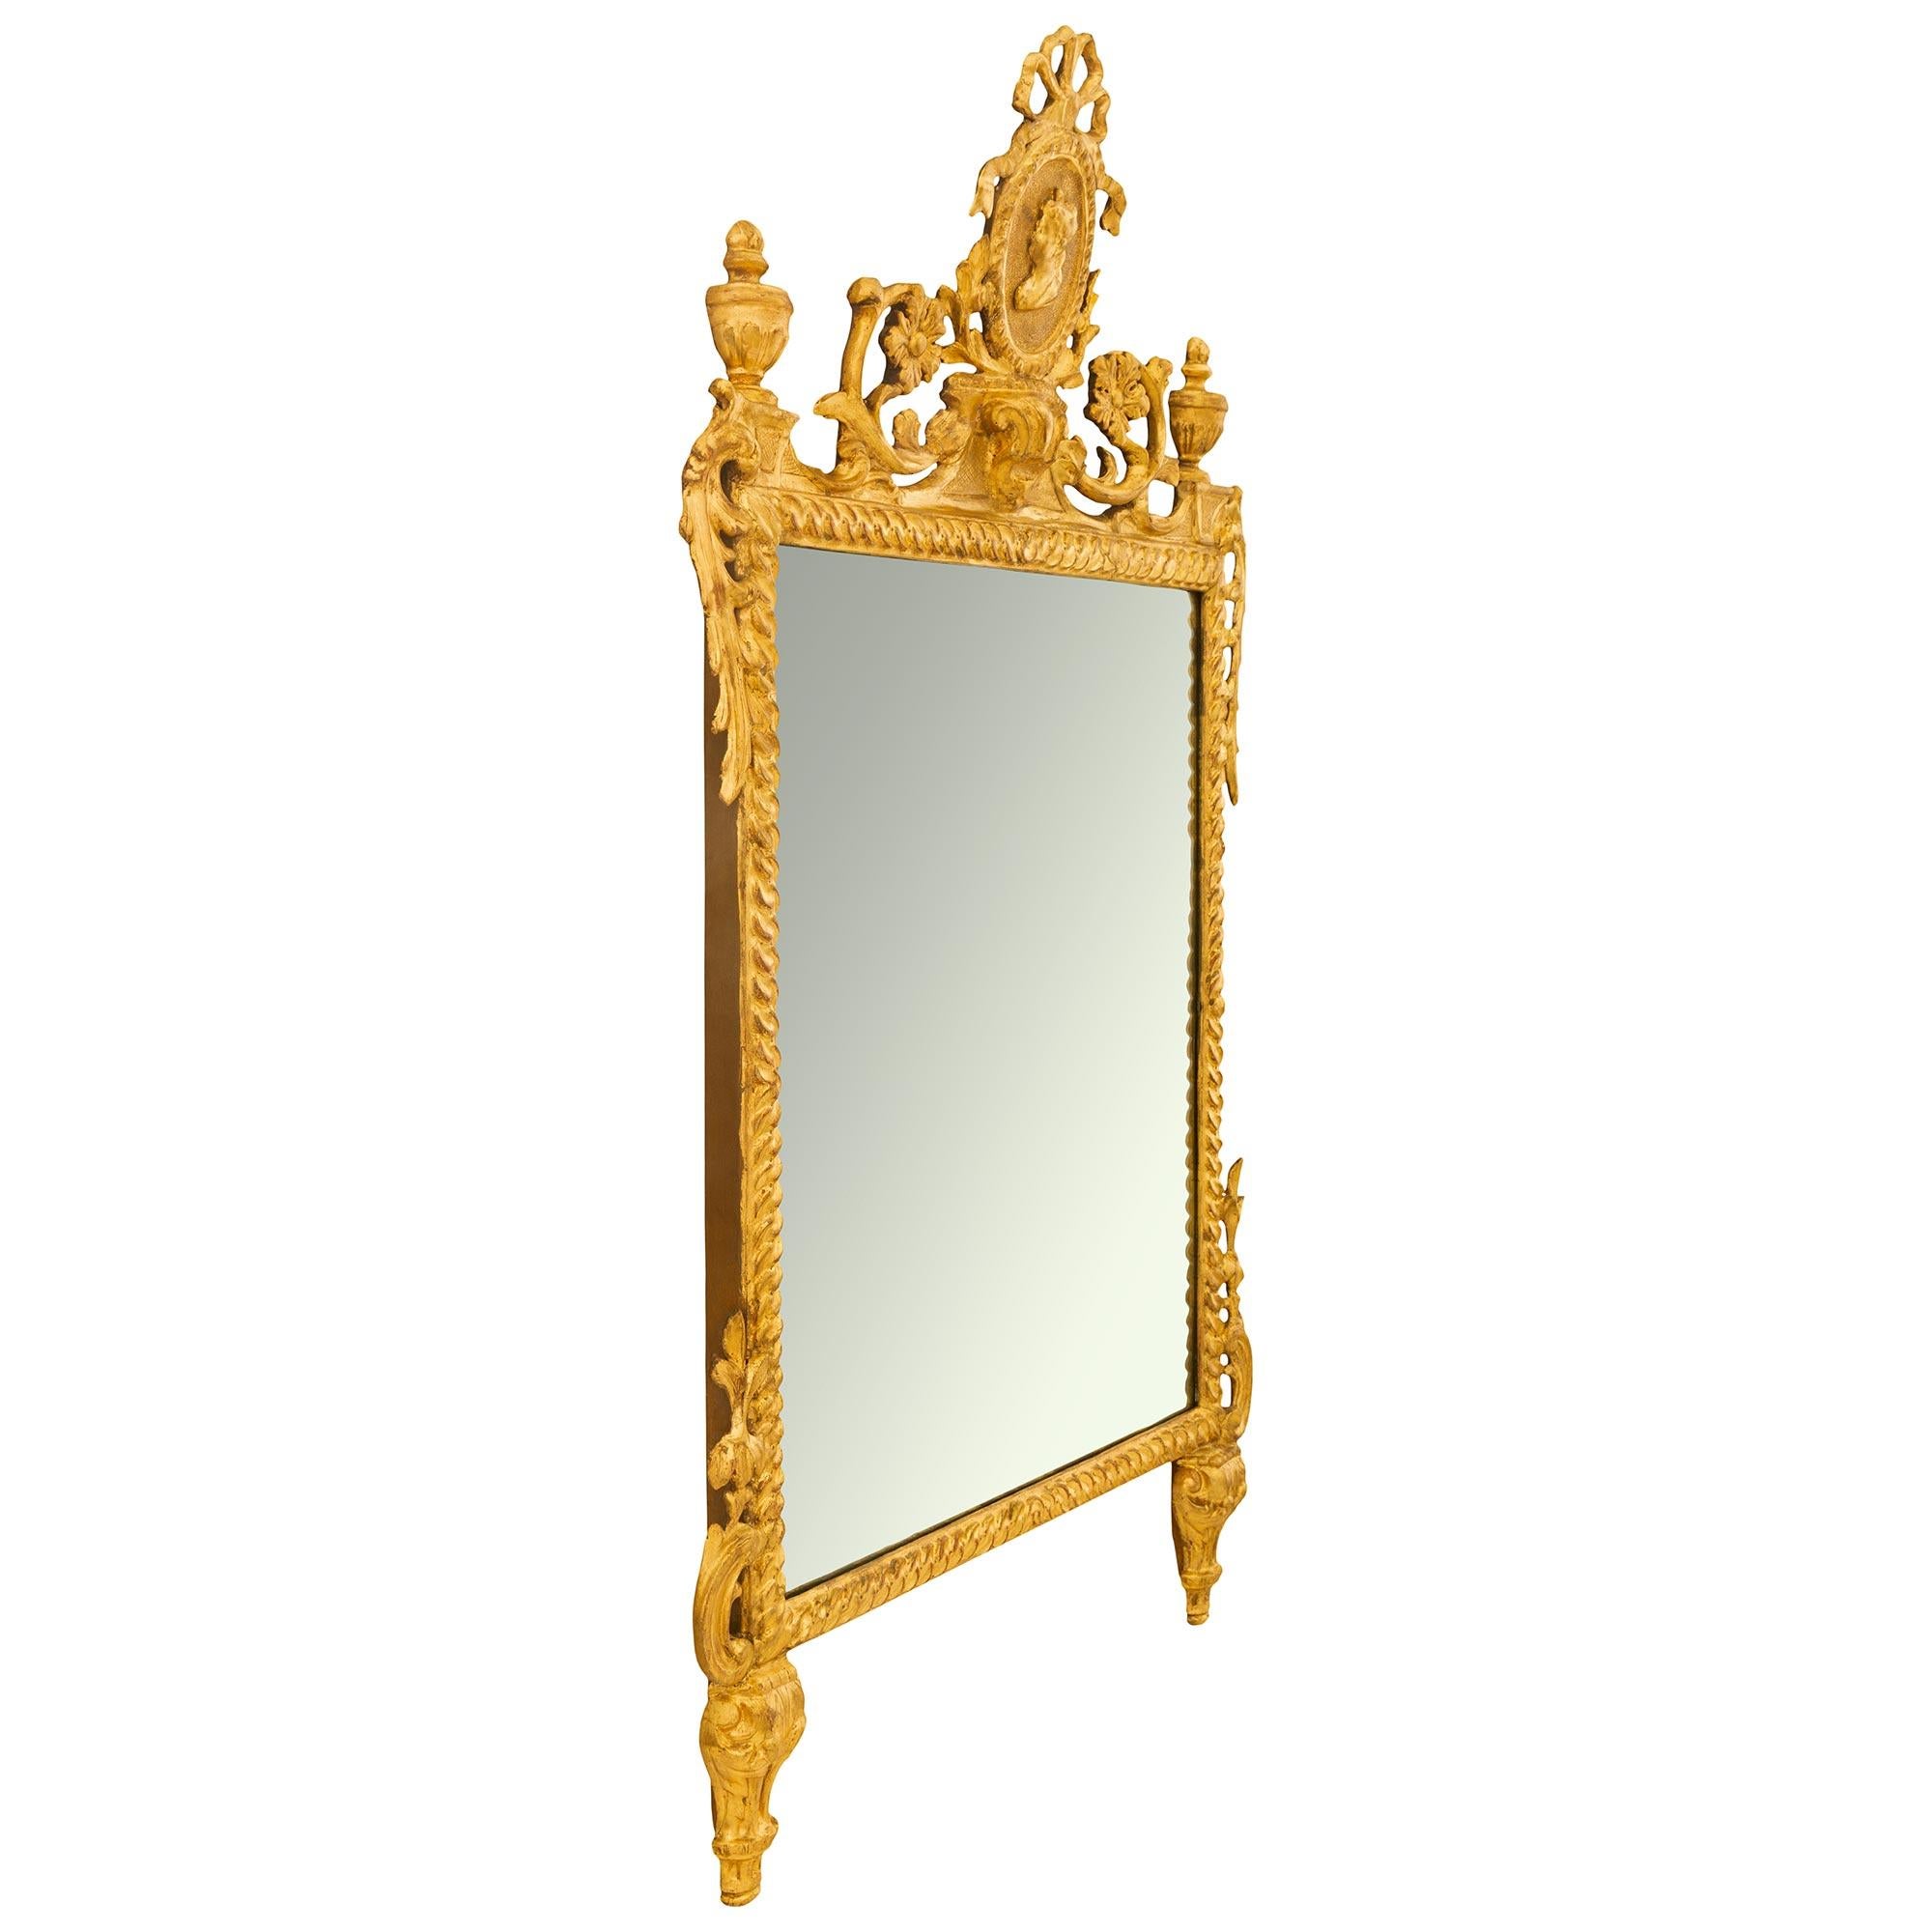 Élégant miroir italien en bois doré d'époque Louis XVI du XVIIIe siècle. Le miroir, qui a conservé sa glace et sa dorure d'origine, est surélevé par deux supports à feuilles d'acanthe. Le cadre rectangulaire à motif ondulé est orné d'une feuille